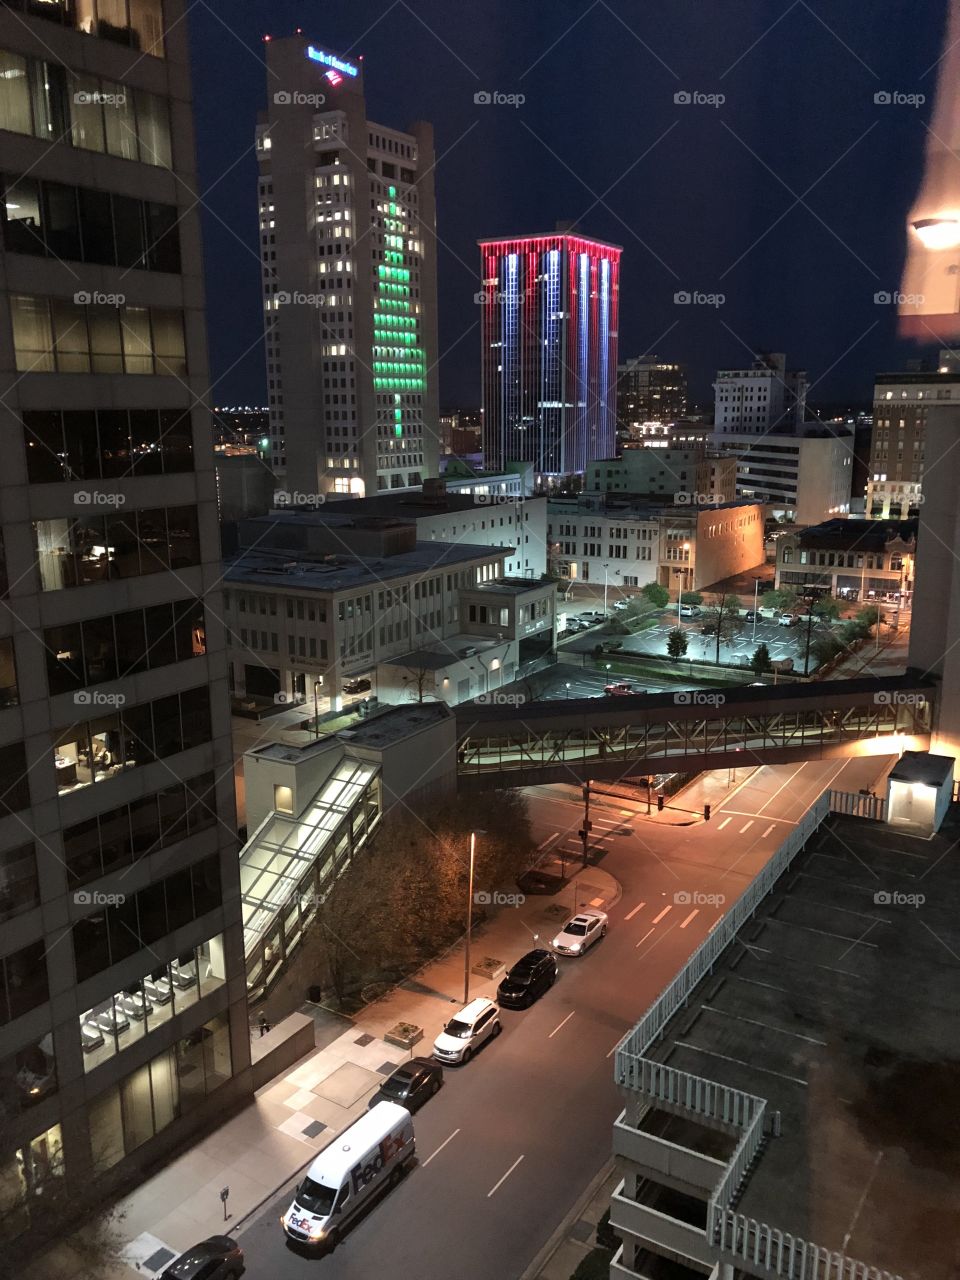 City Christmas lights